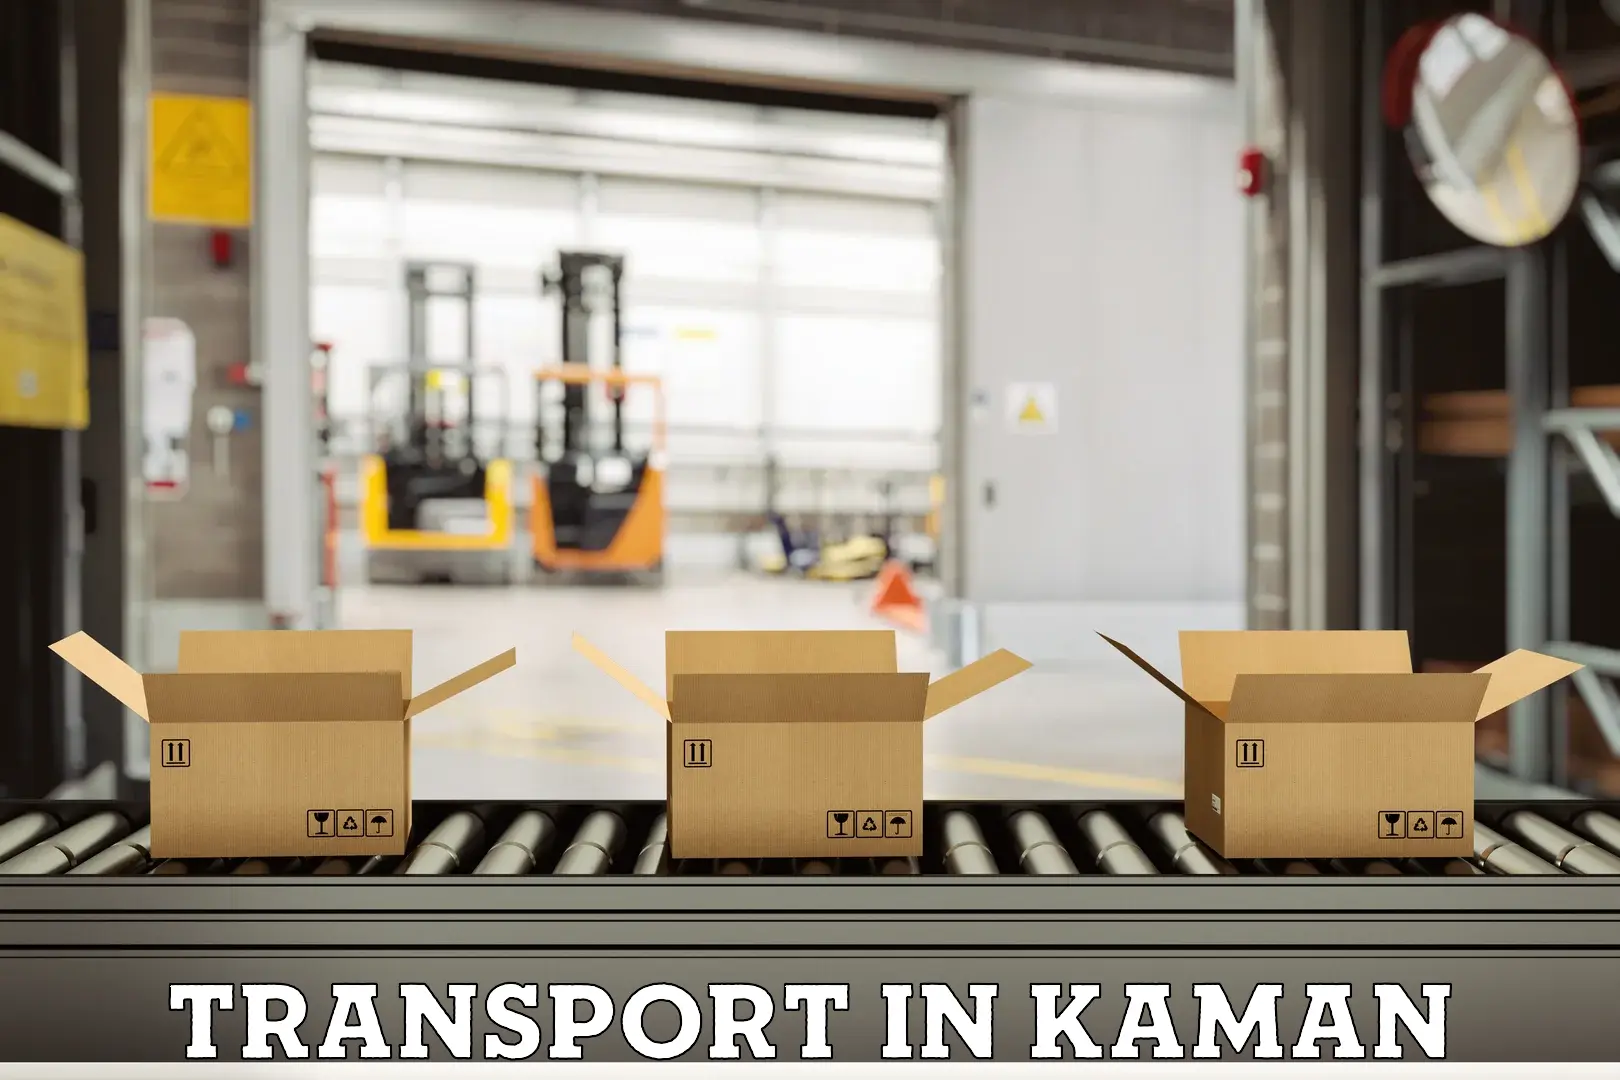 Nearest transport service in Kaman